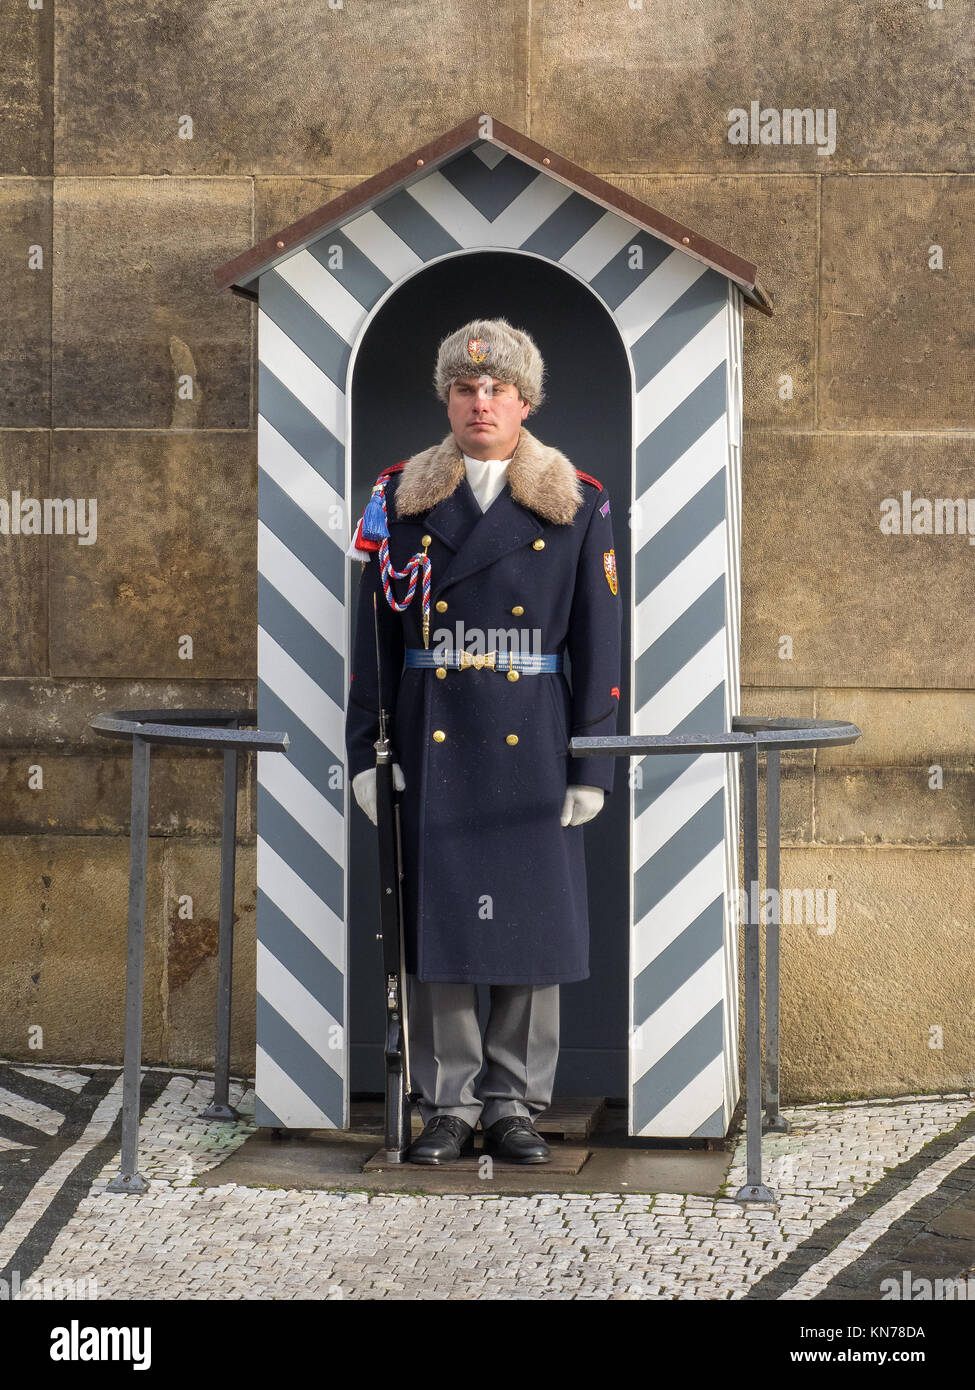 Prague, Czech Republic, 4th Dec 2017: Prague castle guard soldier with winter uniform Stock Photo